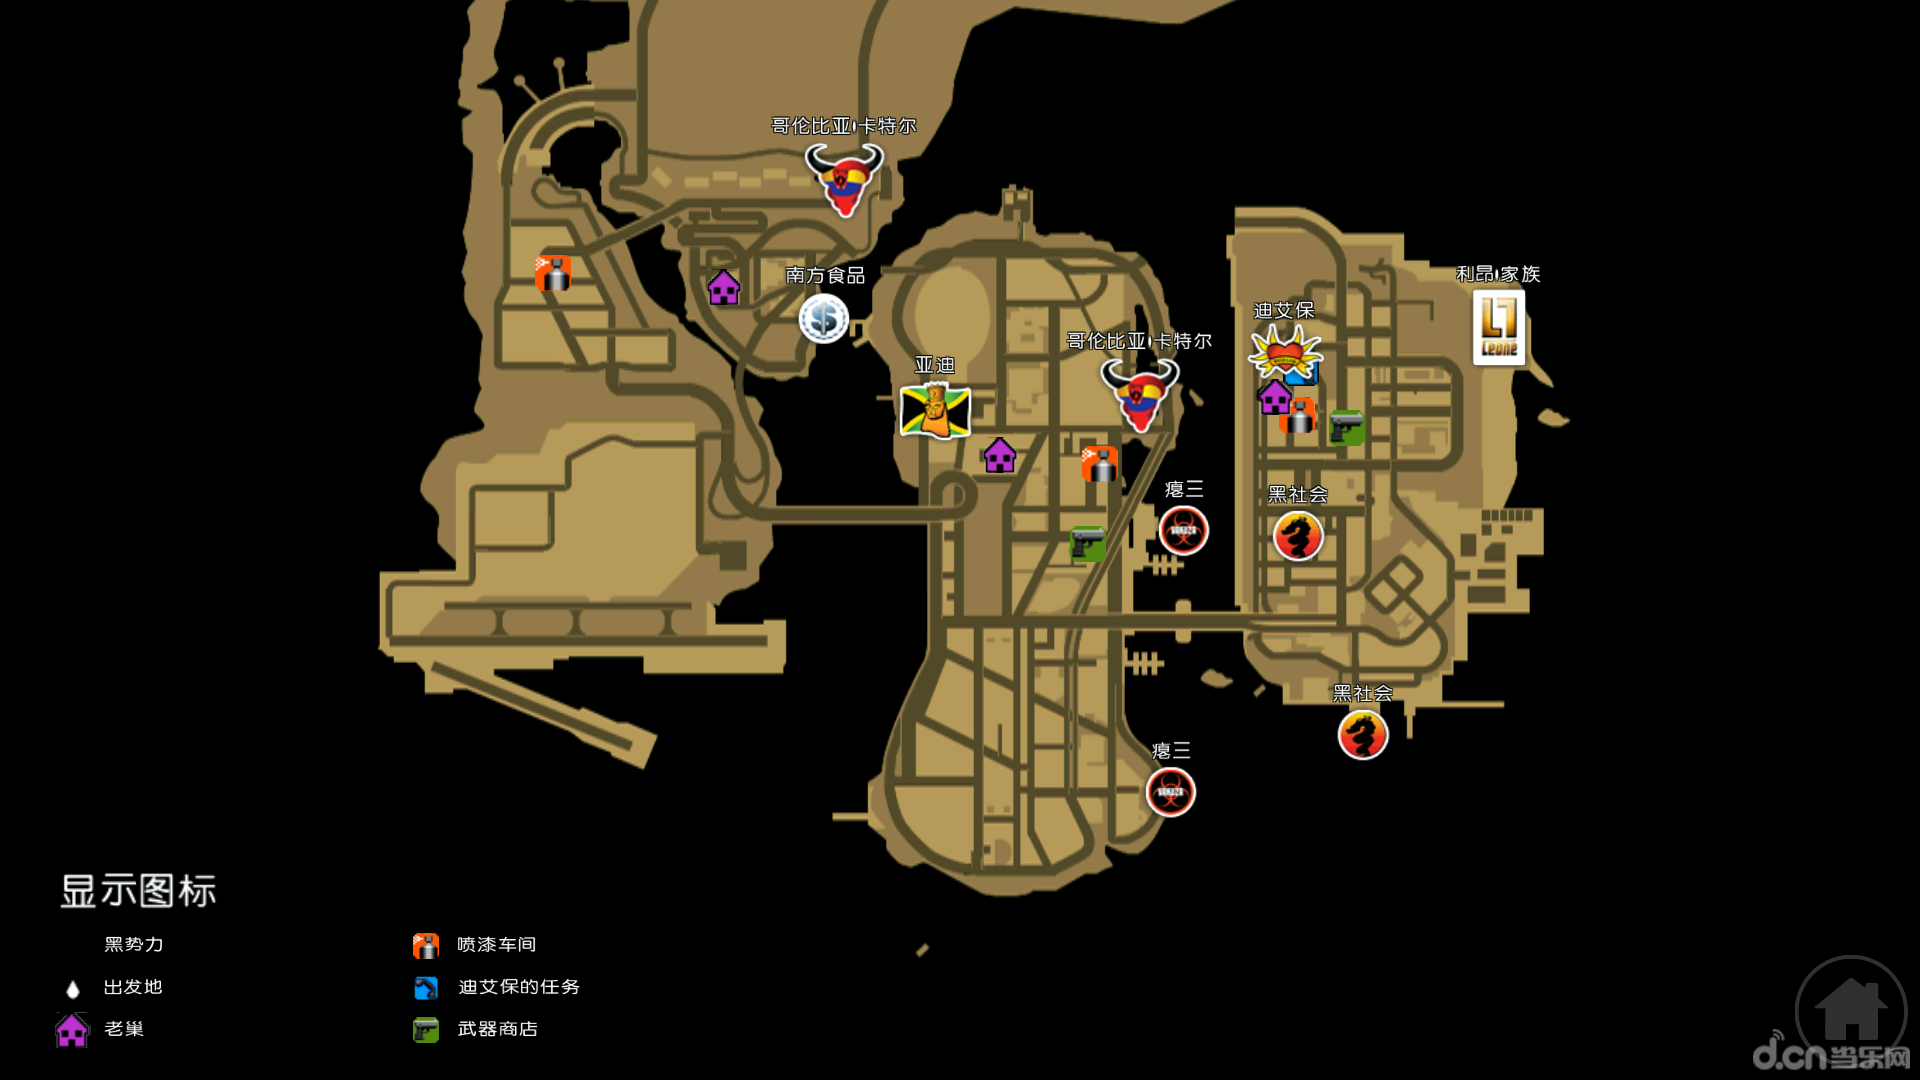 《侠盗猎车手:自由城故事》是 gta 系列的一个外传故事,于2006年正式图片